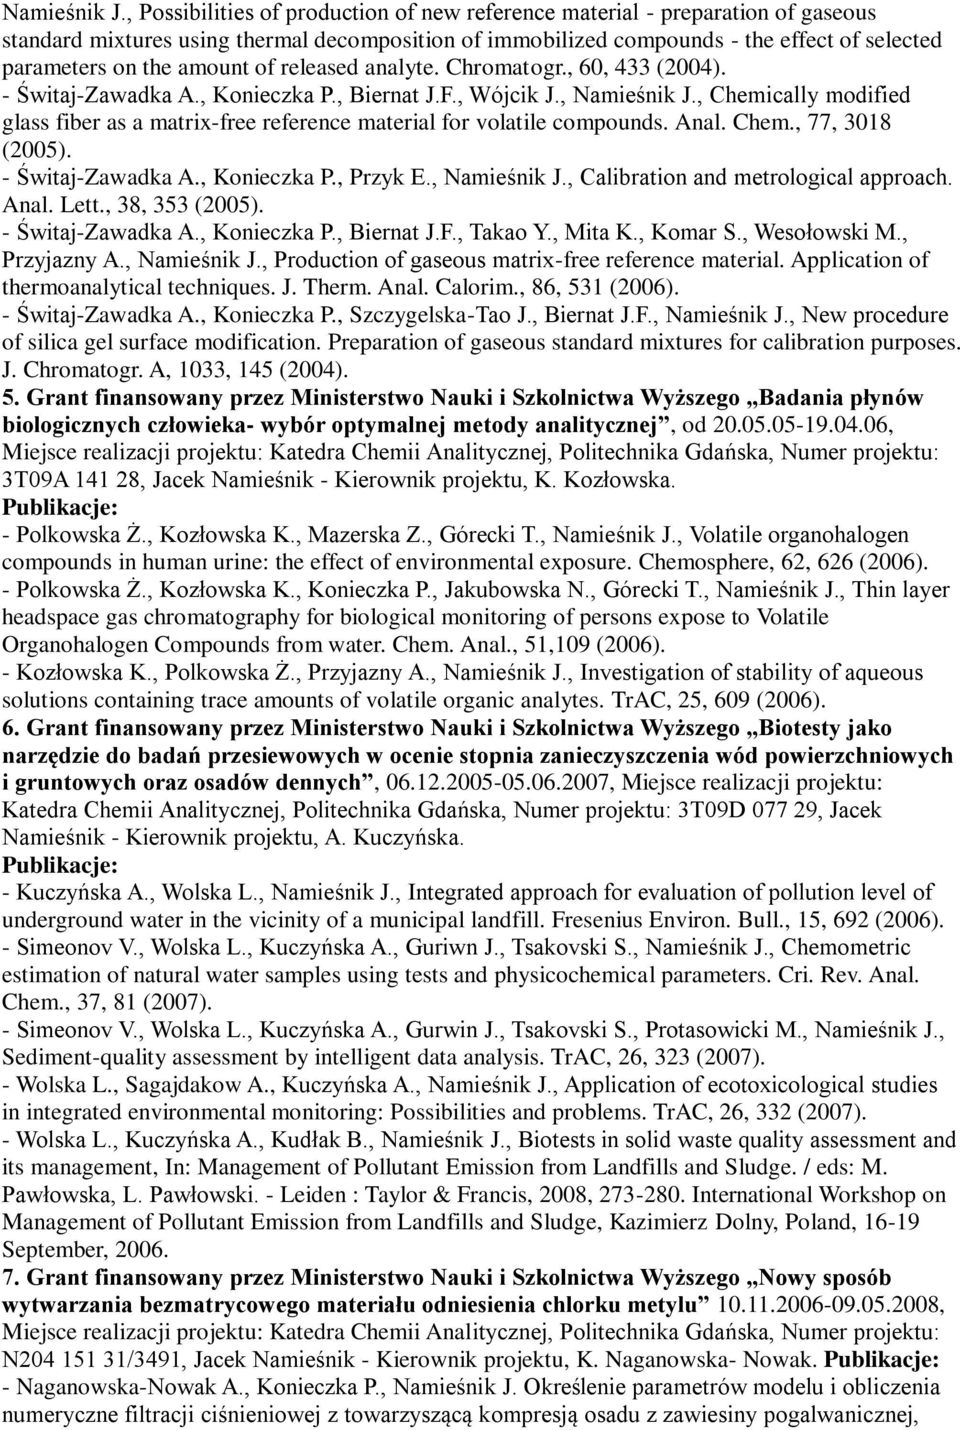 amount of released analyte. Chromatogr., 60, 433 (2004). - Świtaj-Zawadka A., Konieczka P., Biernat J.F., Wójcik J.